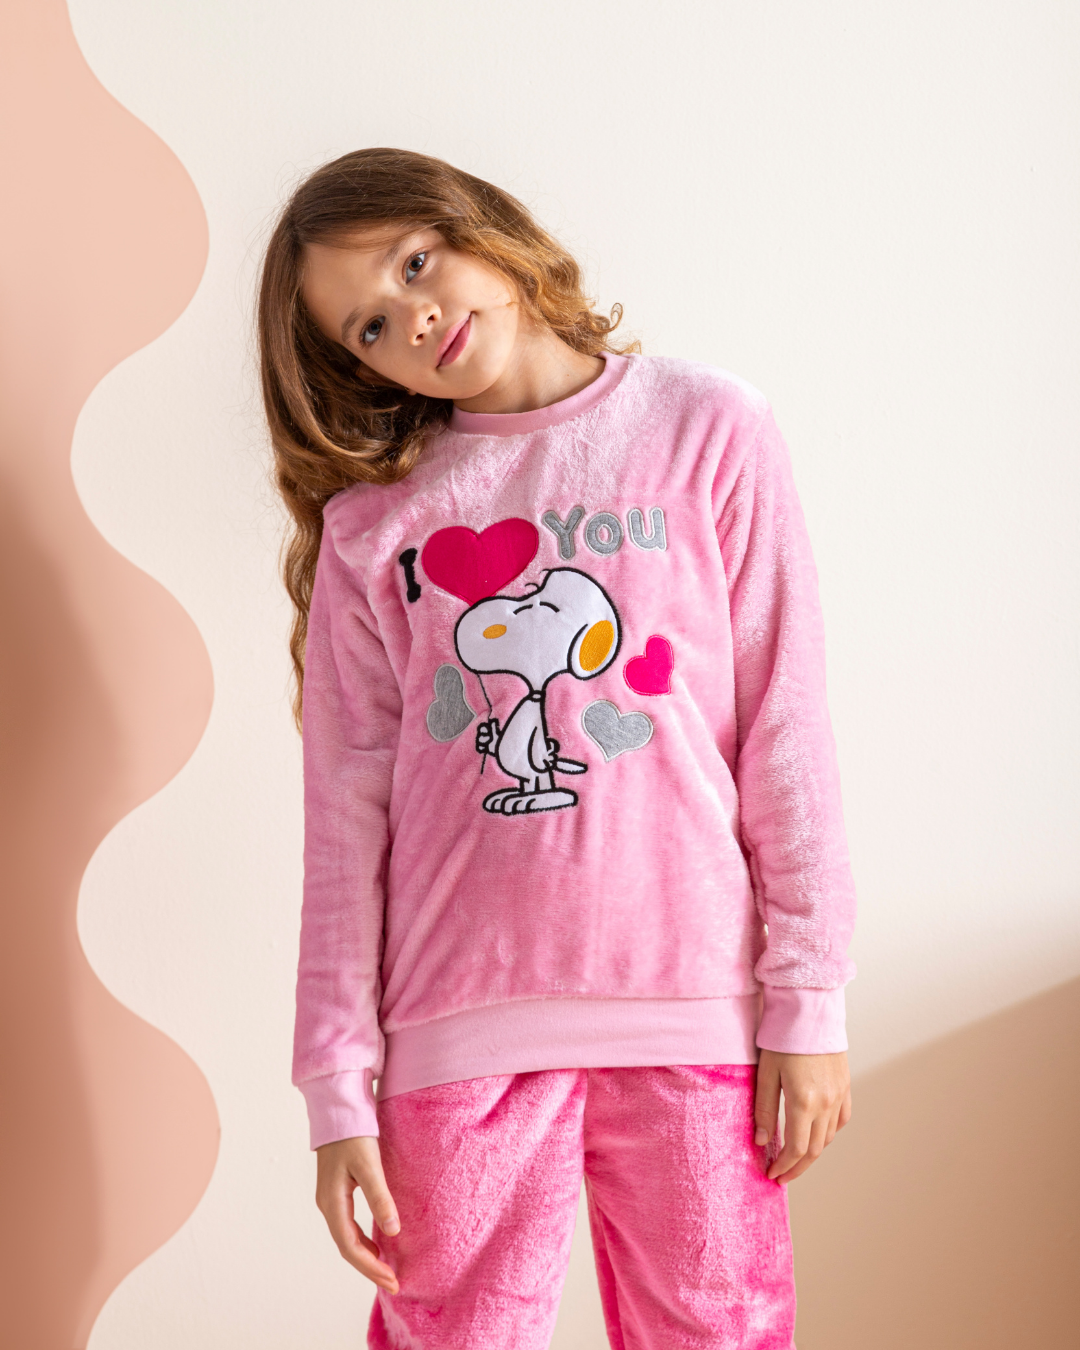 Snoopy love you girls pajamas